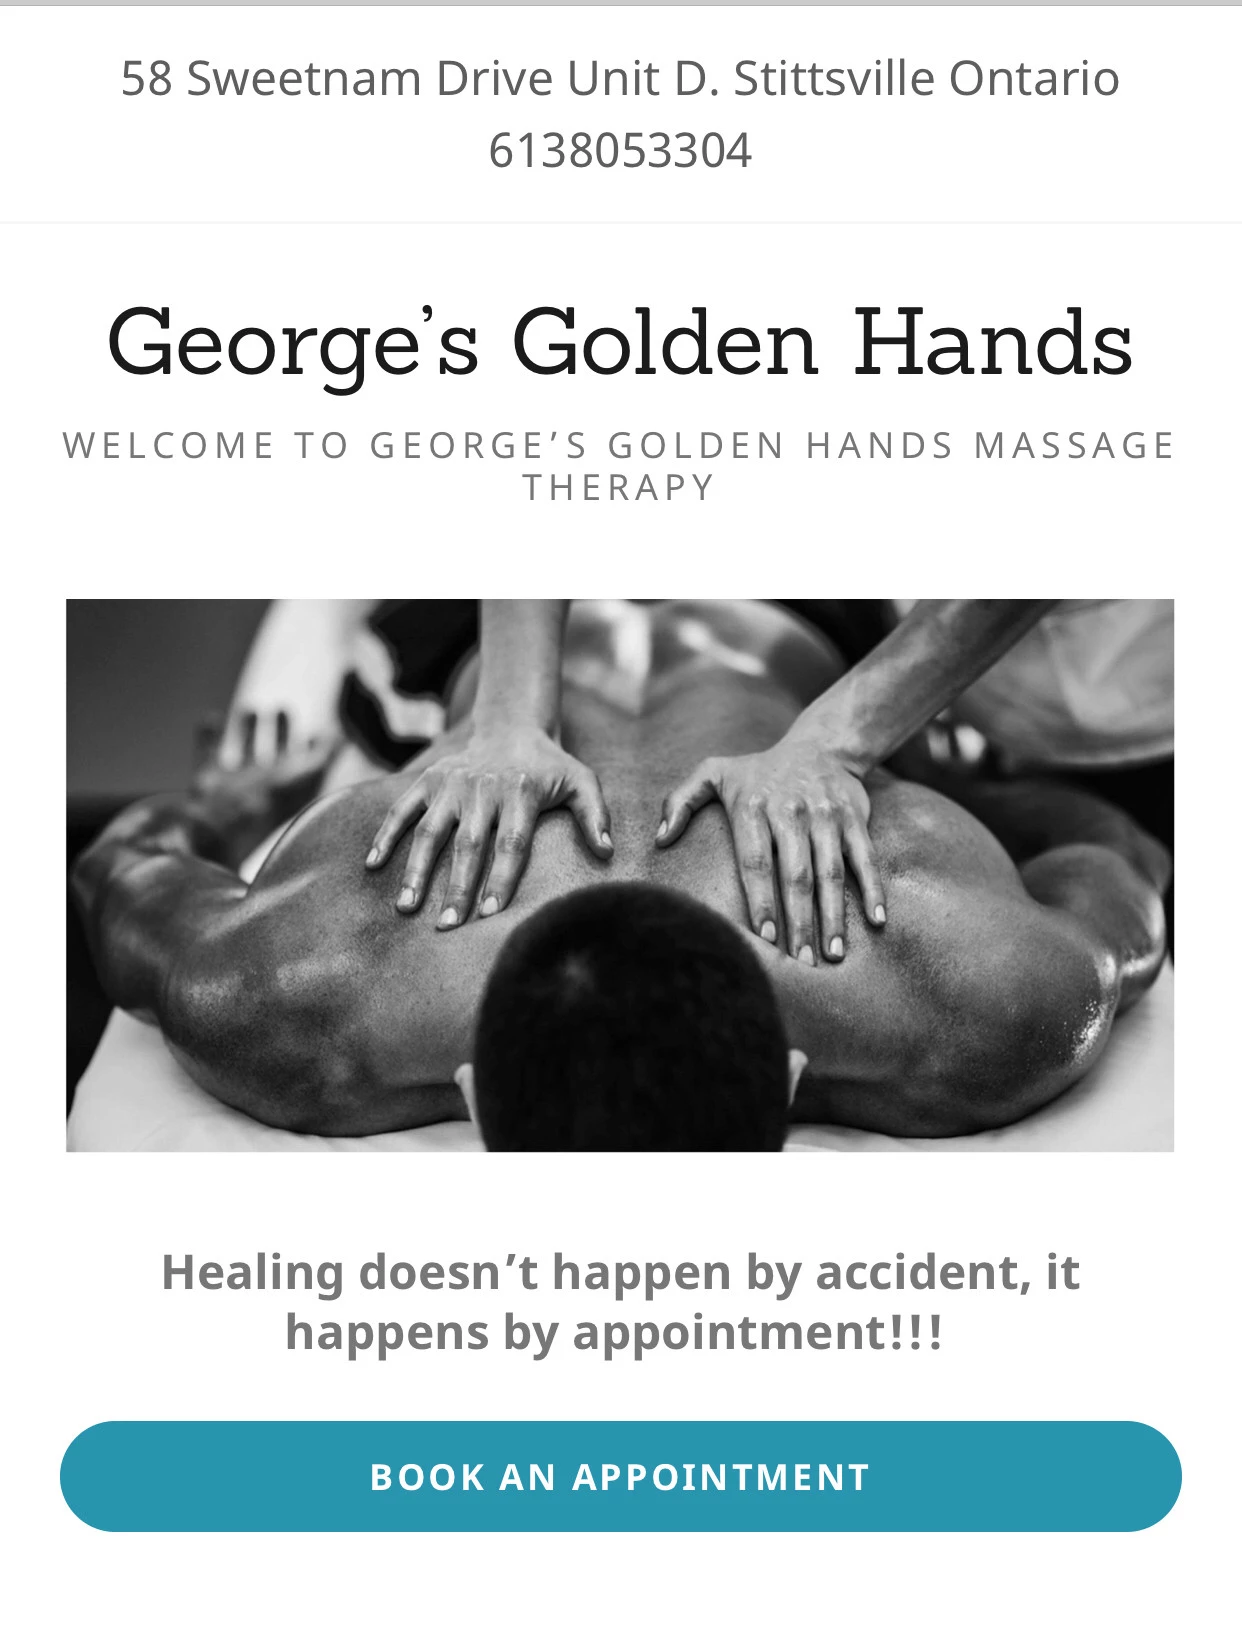 George’s Golden Hands Massage w